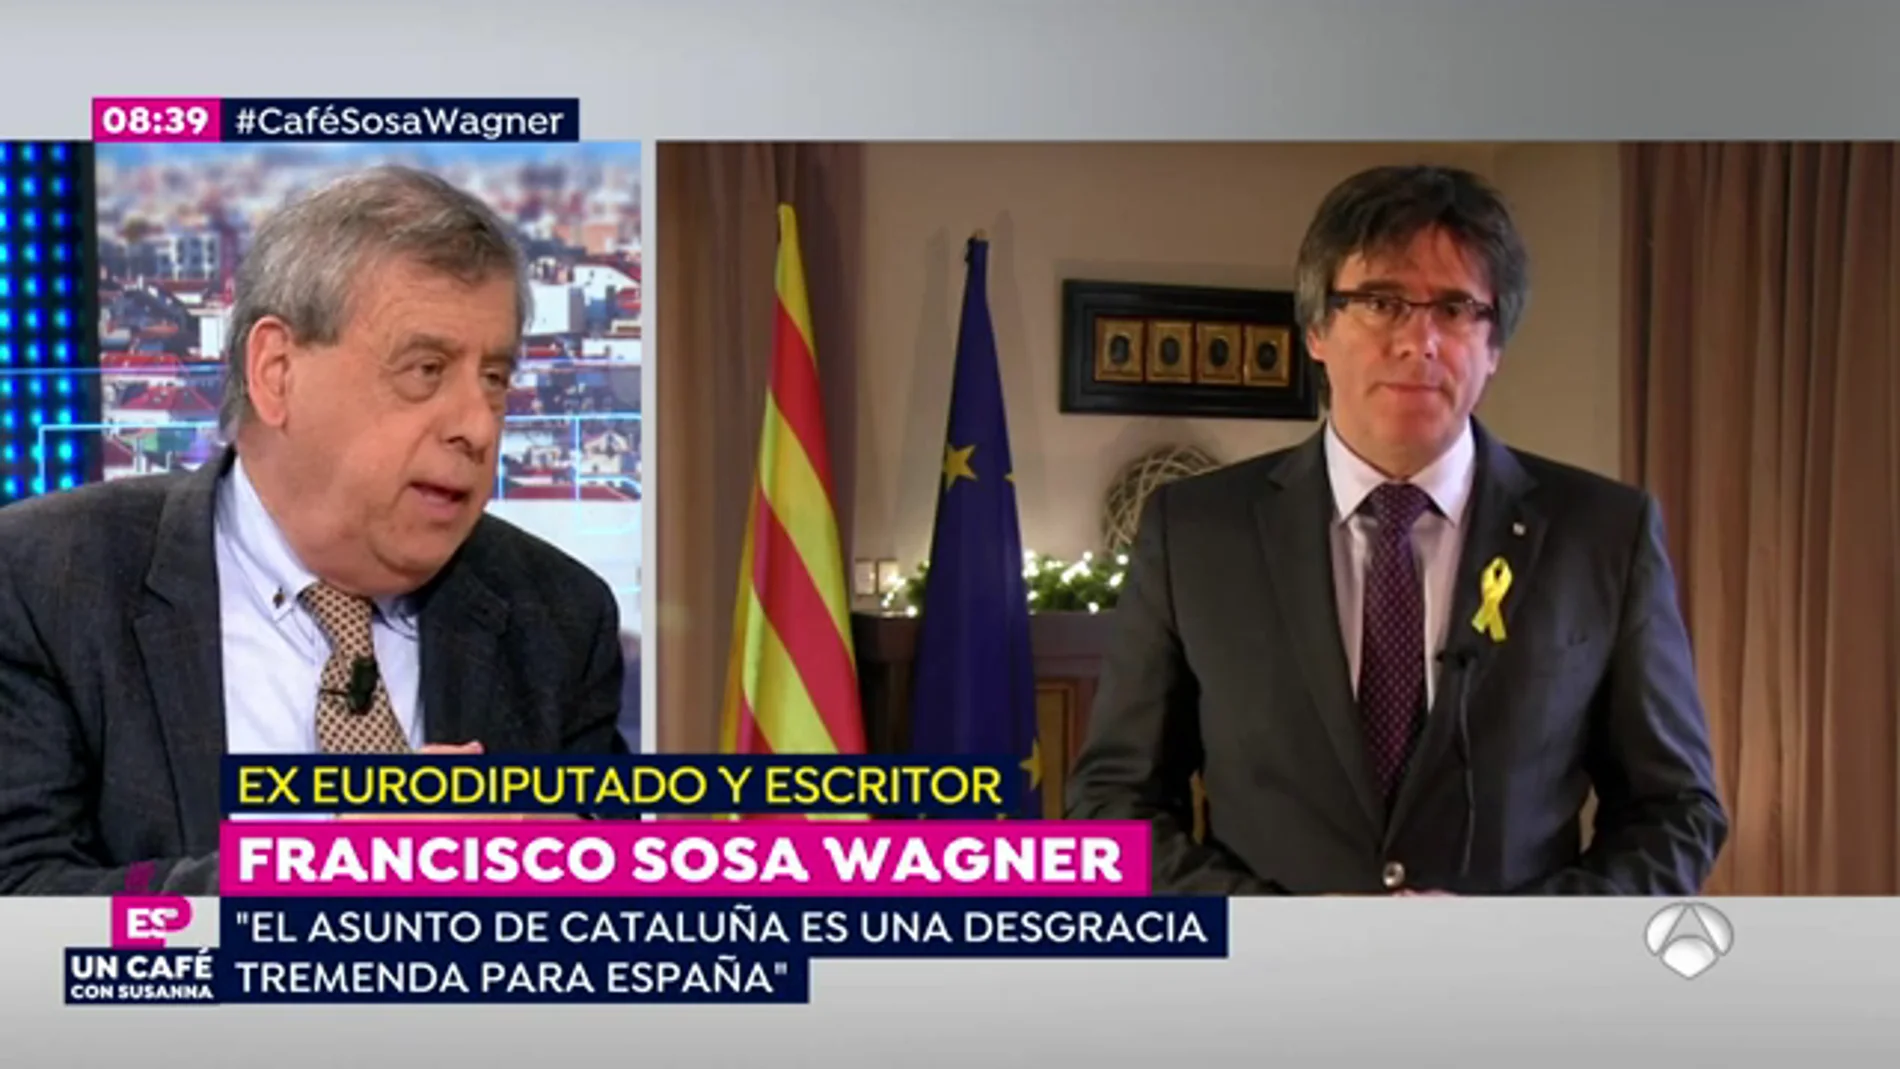 Francisco Sosa Wagner: "El asunto de Cataluña es una desgracia tremenda para España"